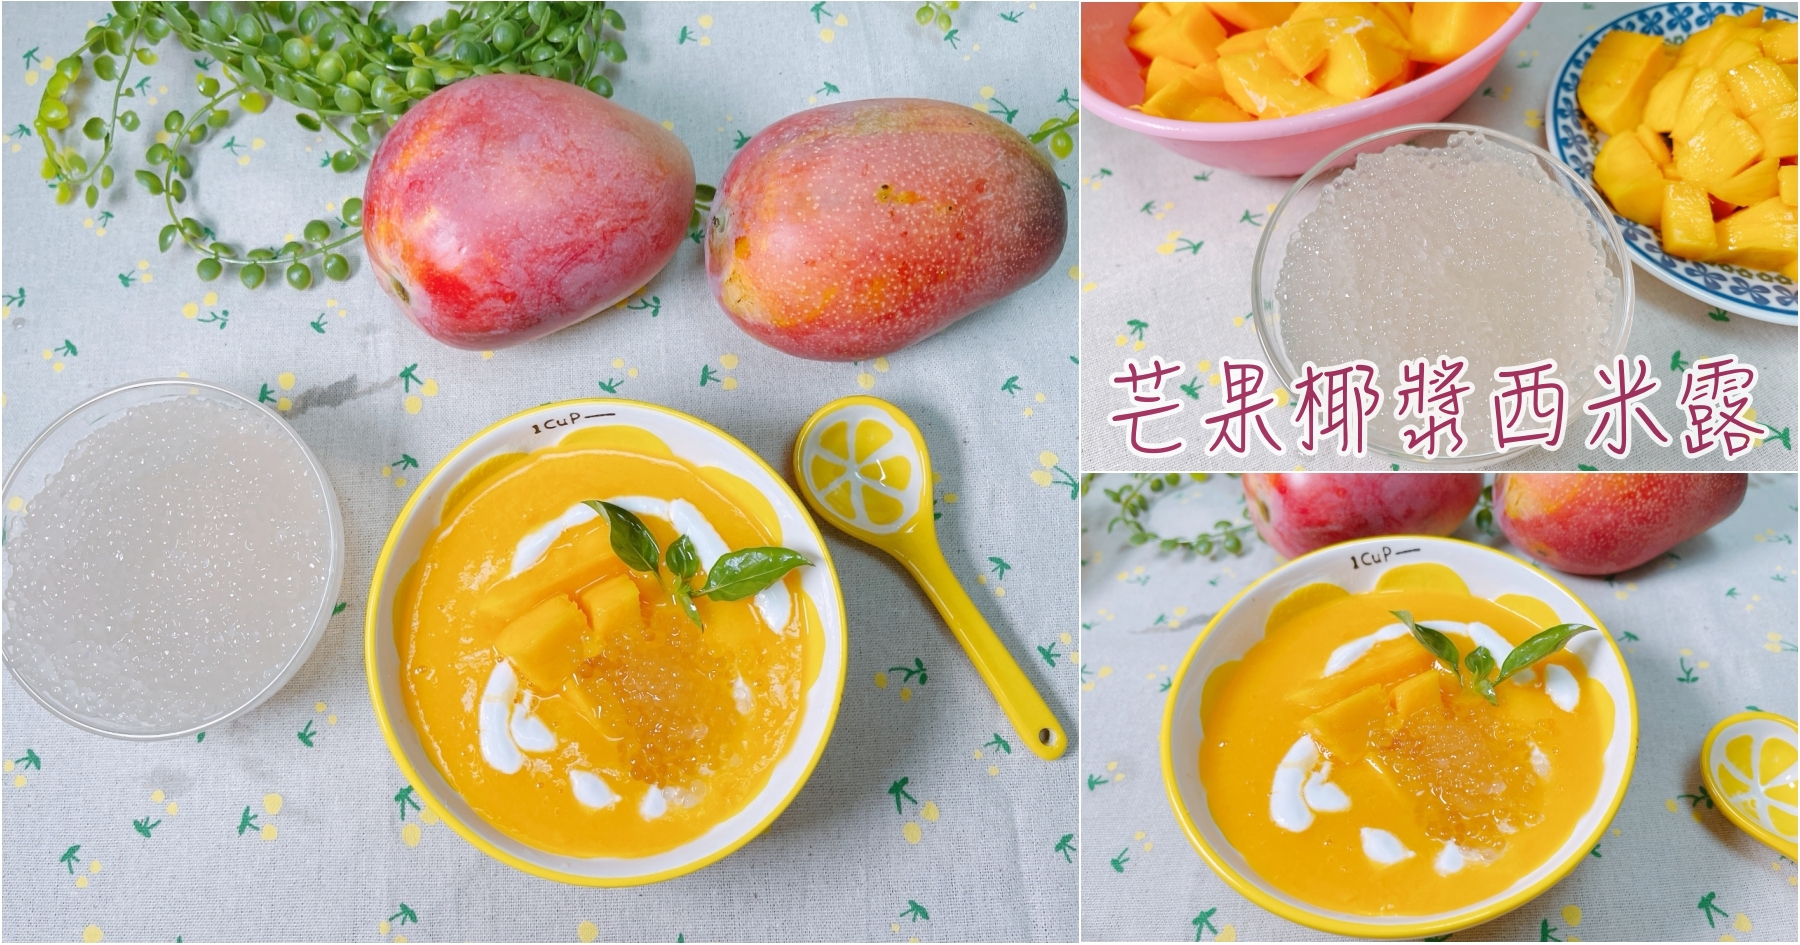 [烹飪]芒果椰漿西米露|台灣水果皆可應用的點心作法~南洋風格甜點自家也能完成 @VIVIYU小世界